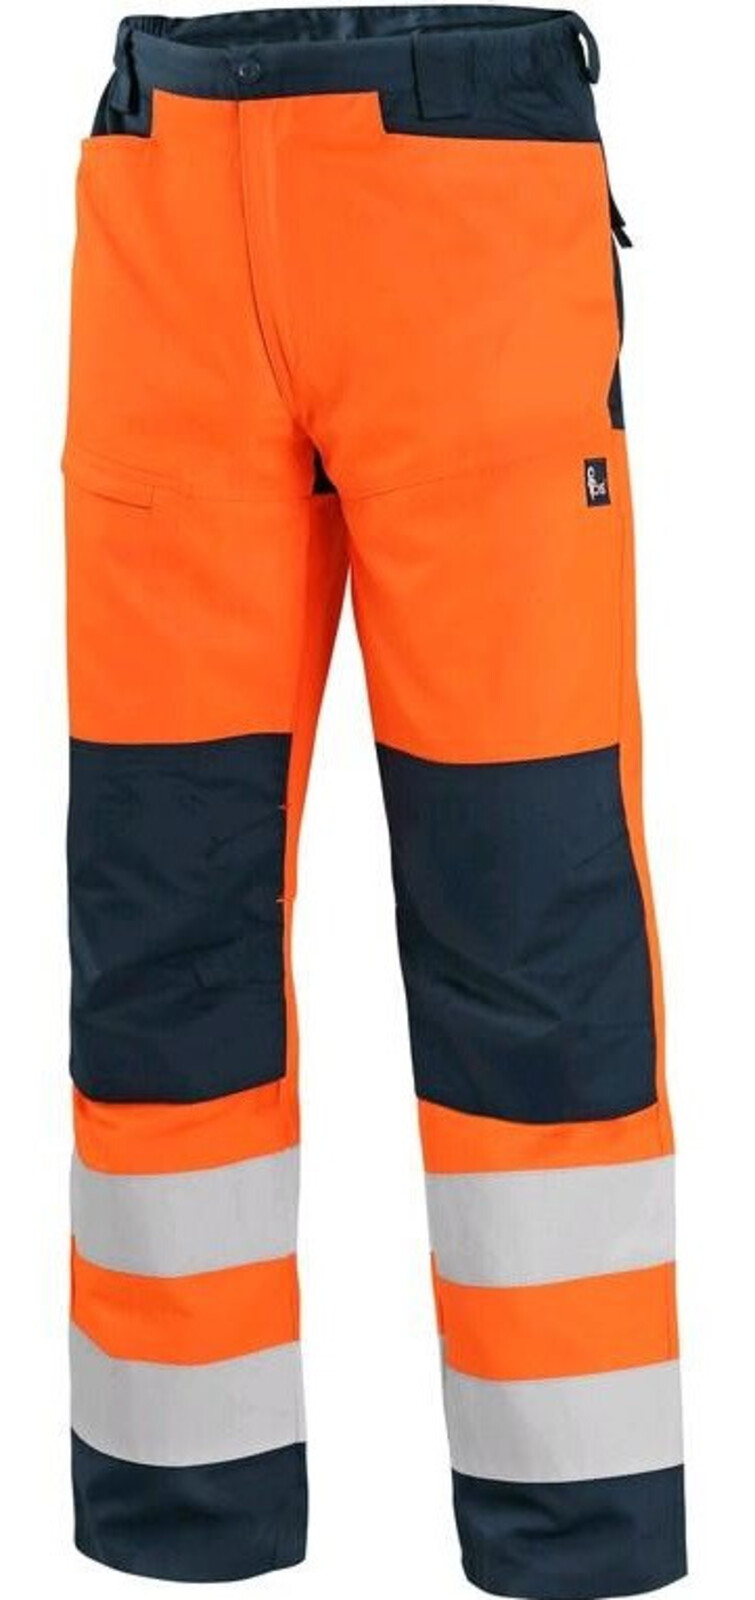 Pánske letné reflexné nohavice CXS Halifax - veľkosť: 52, farba: oranžová/navy